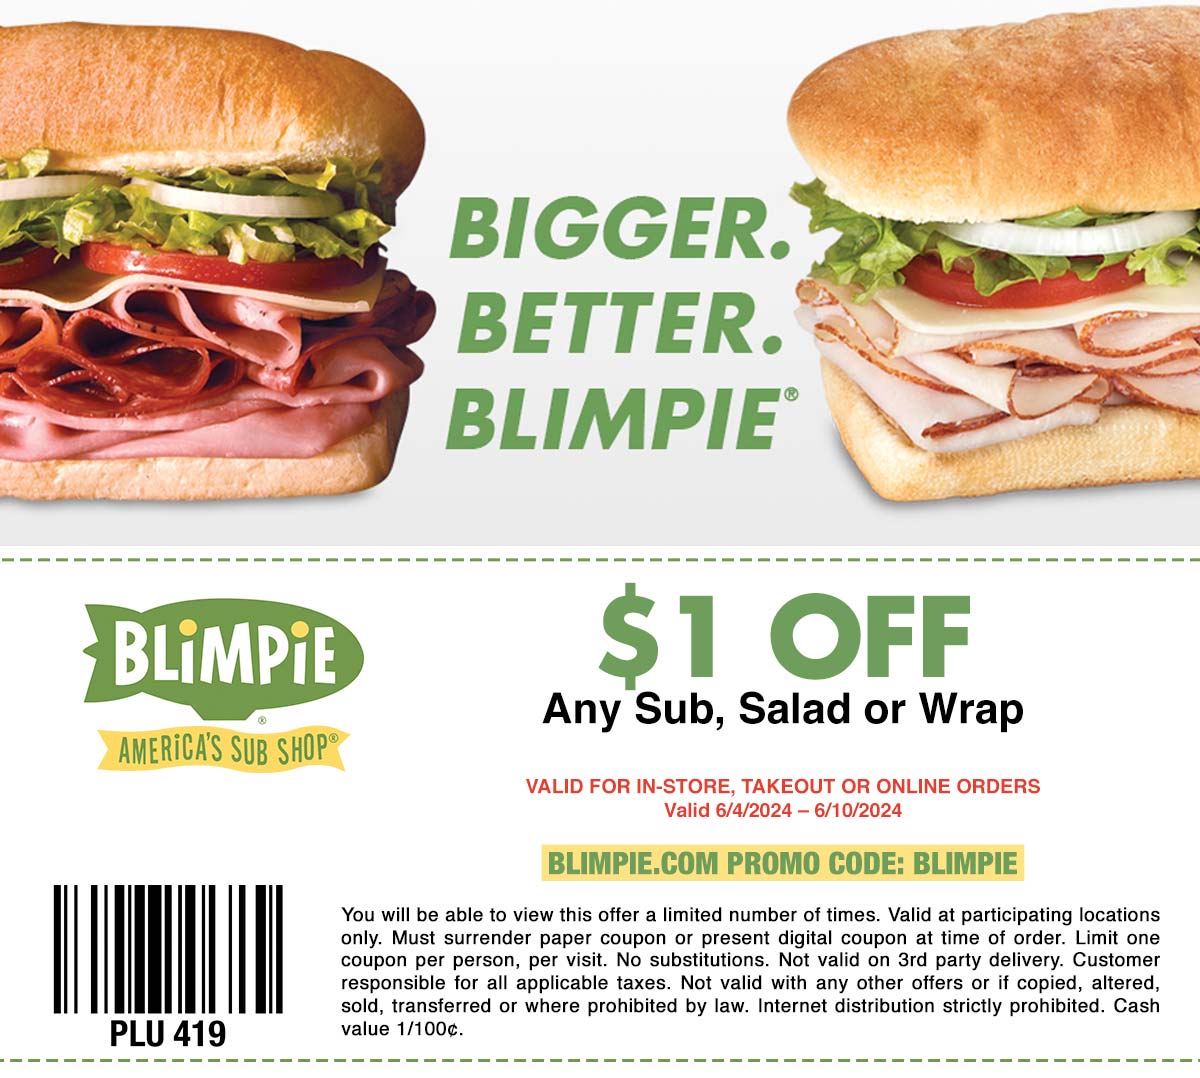 Blimpie restaurants Coupon  $1 off at Blimpie sub sandwich shop, or online via promo code BLIMPIE #blimpie 